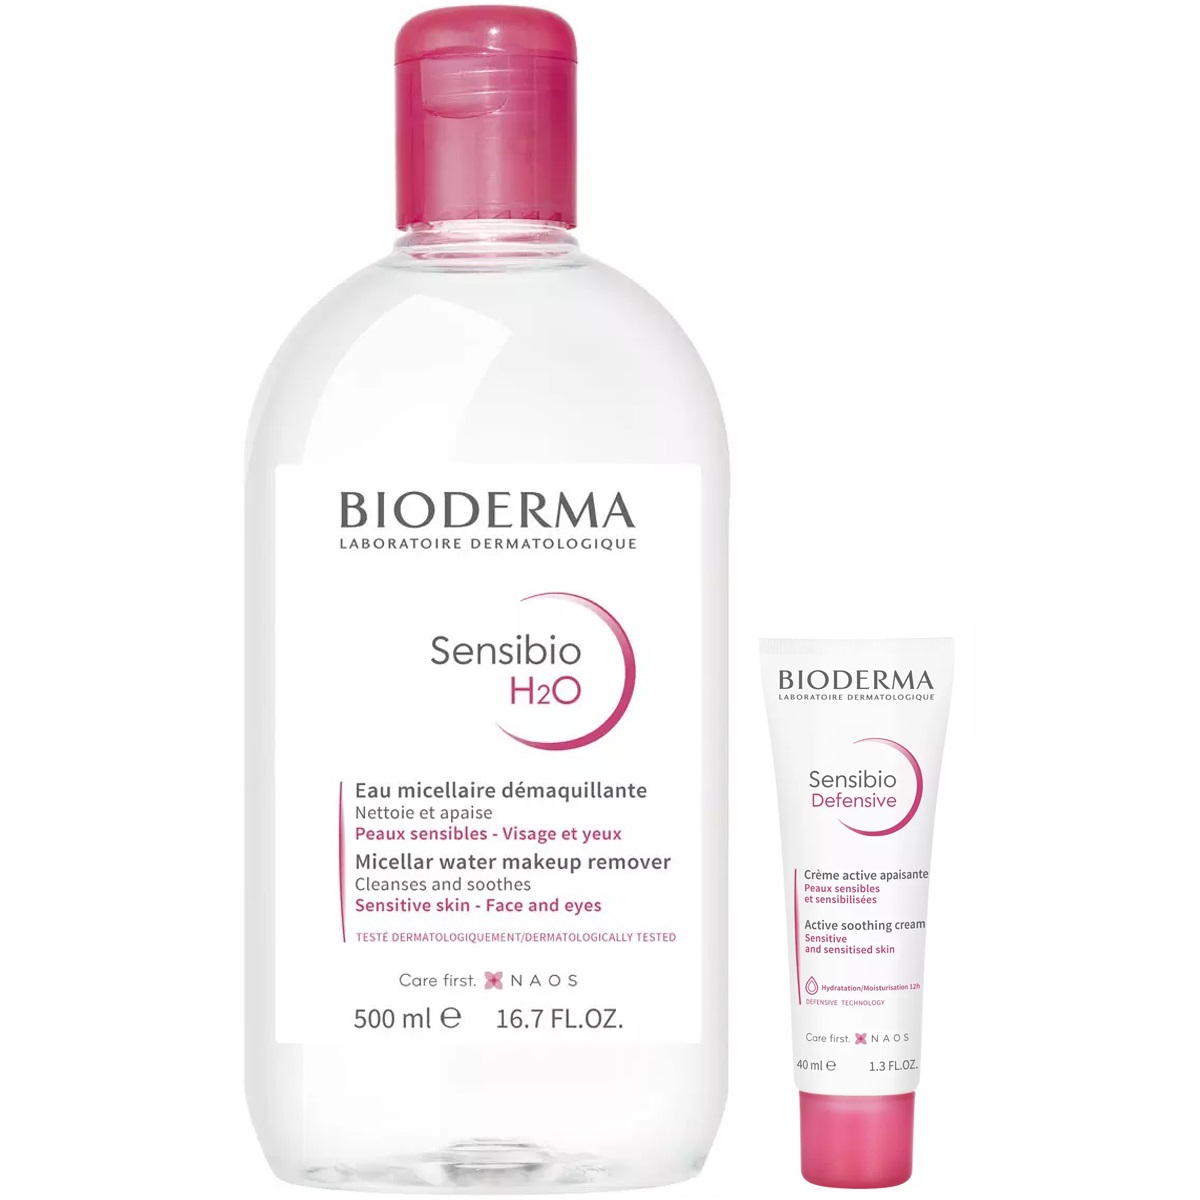 Bioderma Набор для чувствительной кожи: мицеллярная вода, 500 мл + крем, 40 мл (Bioderma, Sensibio) вода мицеллярная для нормальной и чувствительной кожи лица н2о sensibio bioderma биодерма 250мл